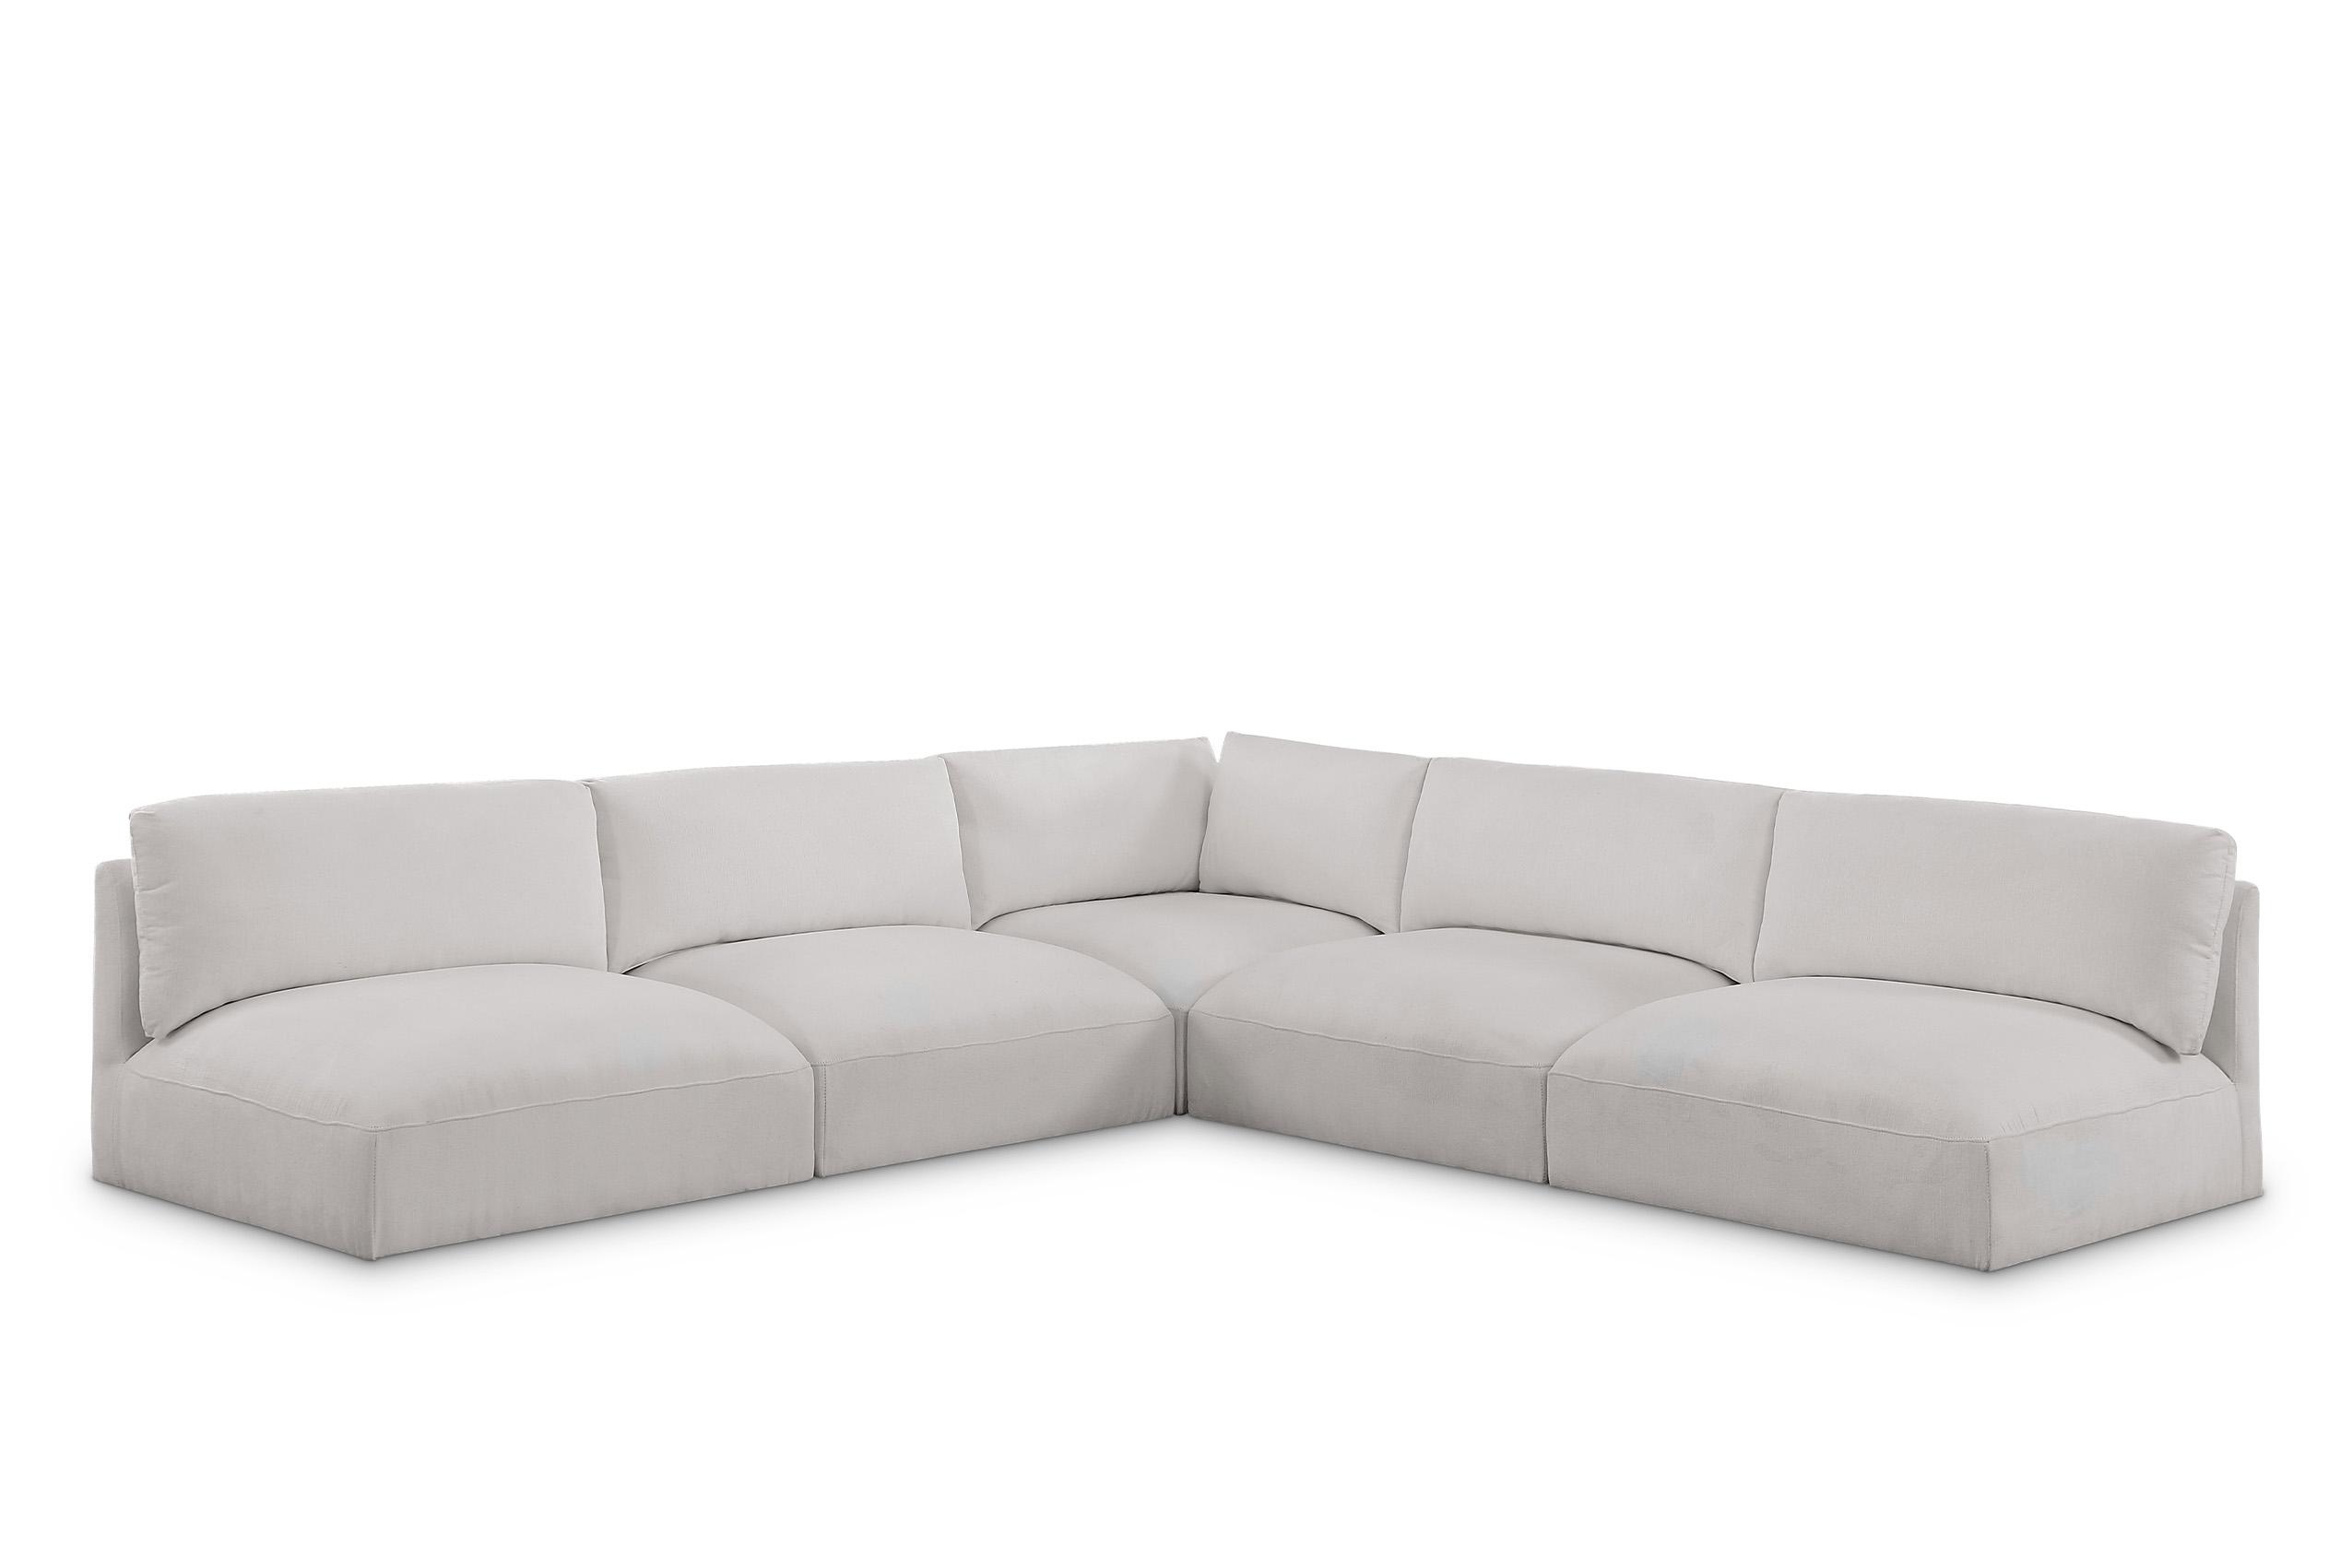 Contemporary, Modern Modular Sectional Sofa EASE 696Cream-Sec5C 696Cream-Sec5C in Cream Fabric